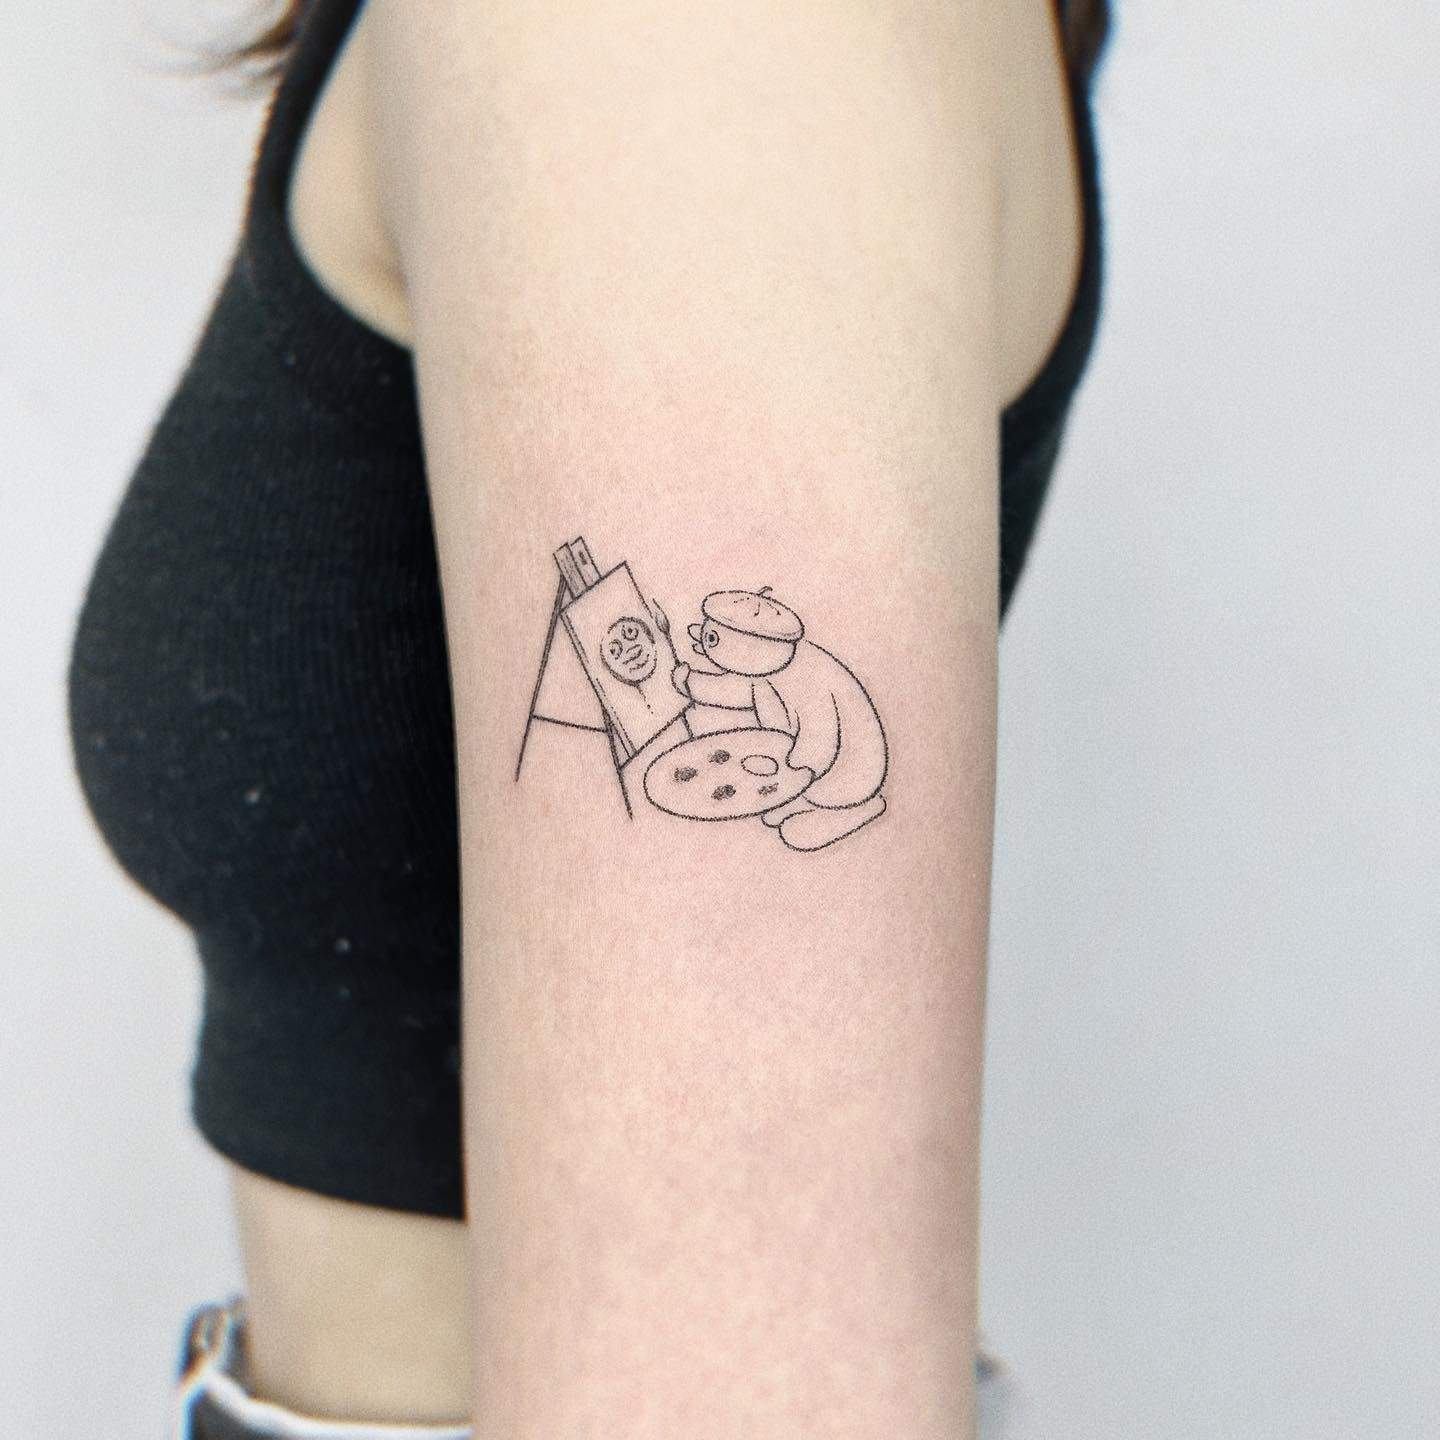 Penguin tattoo by zoeylinink